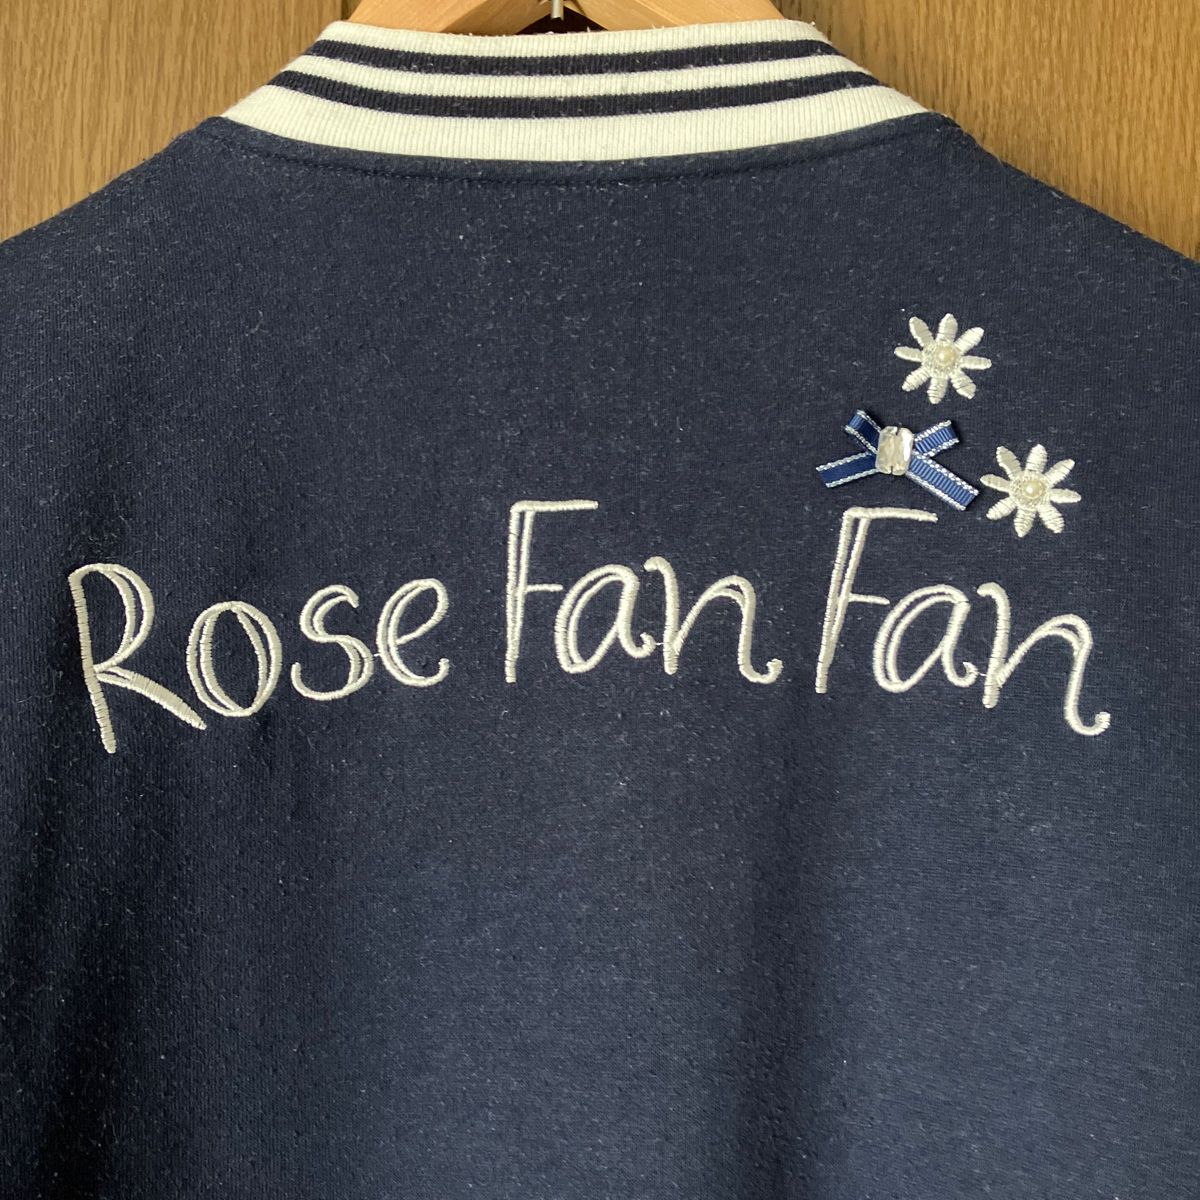  Rose Fan Fan 女の子 スタジャン ジャケット スタジアムジャンパー 160サイズ